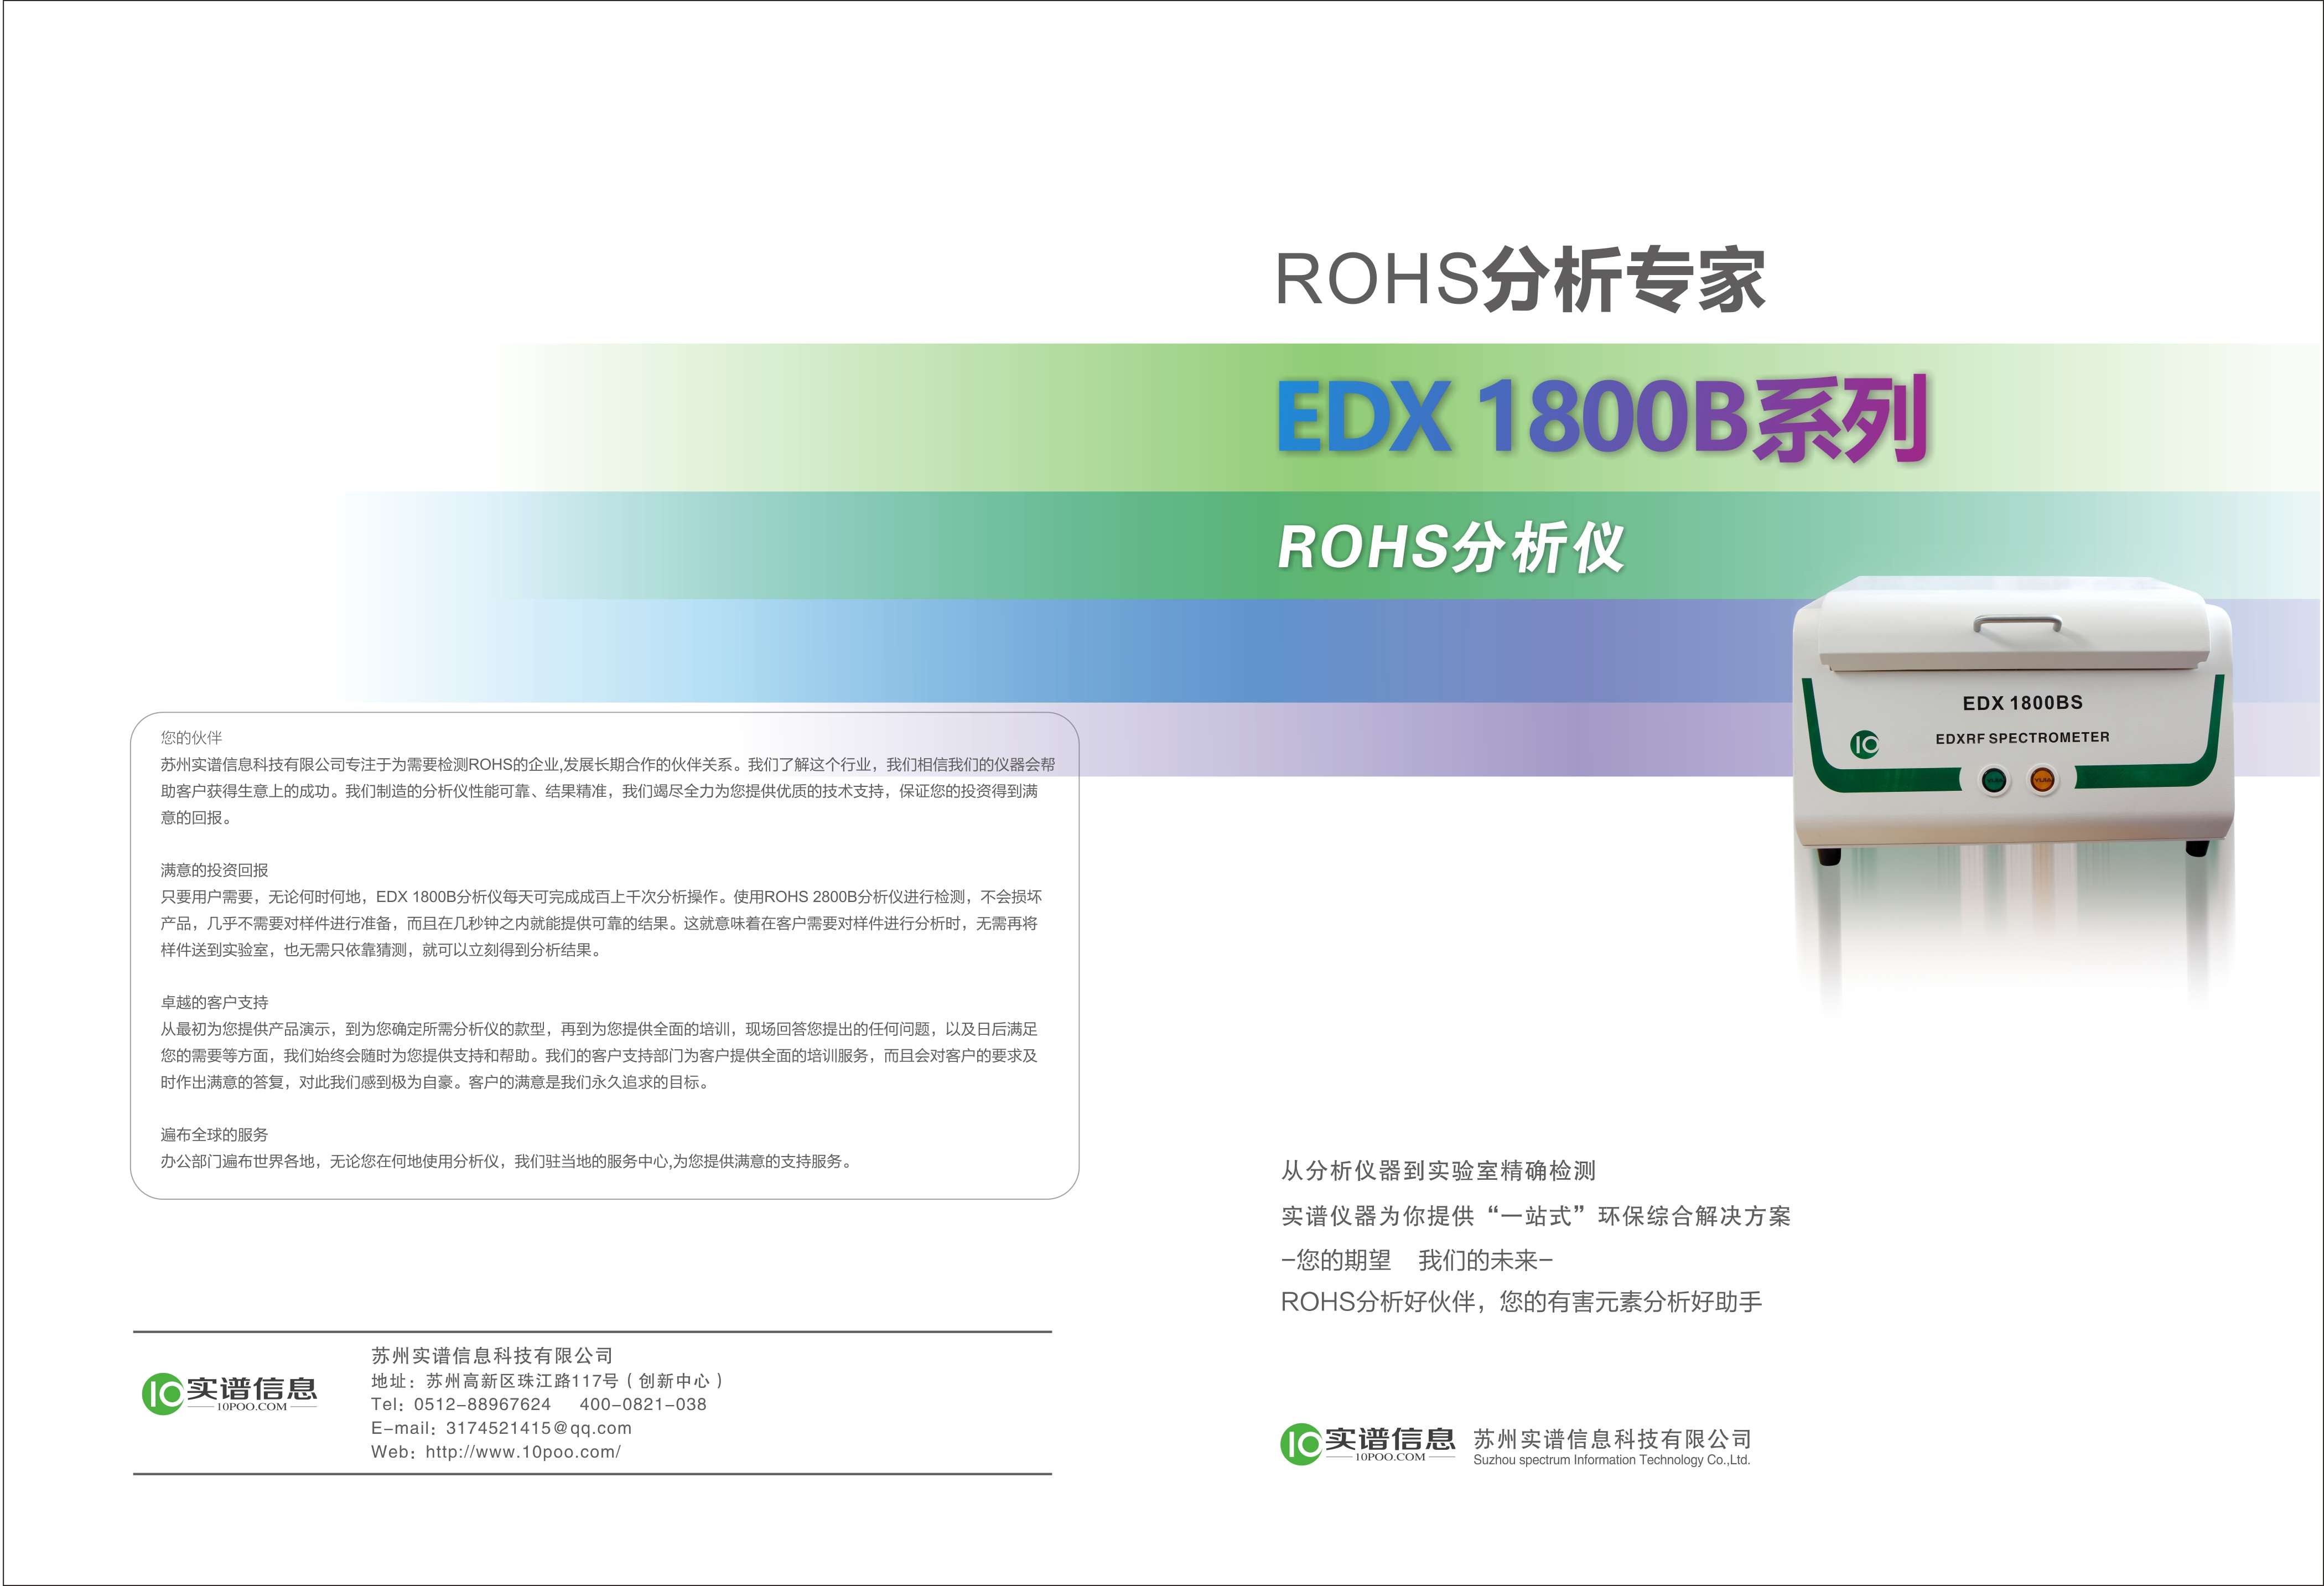 ROHS元素测试分析仪